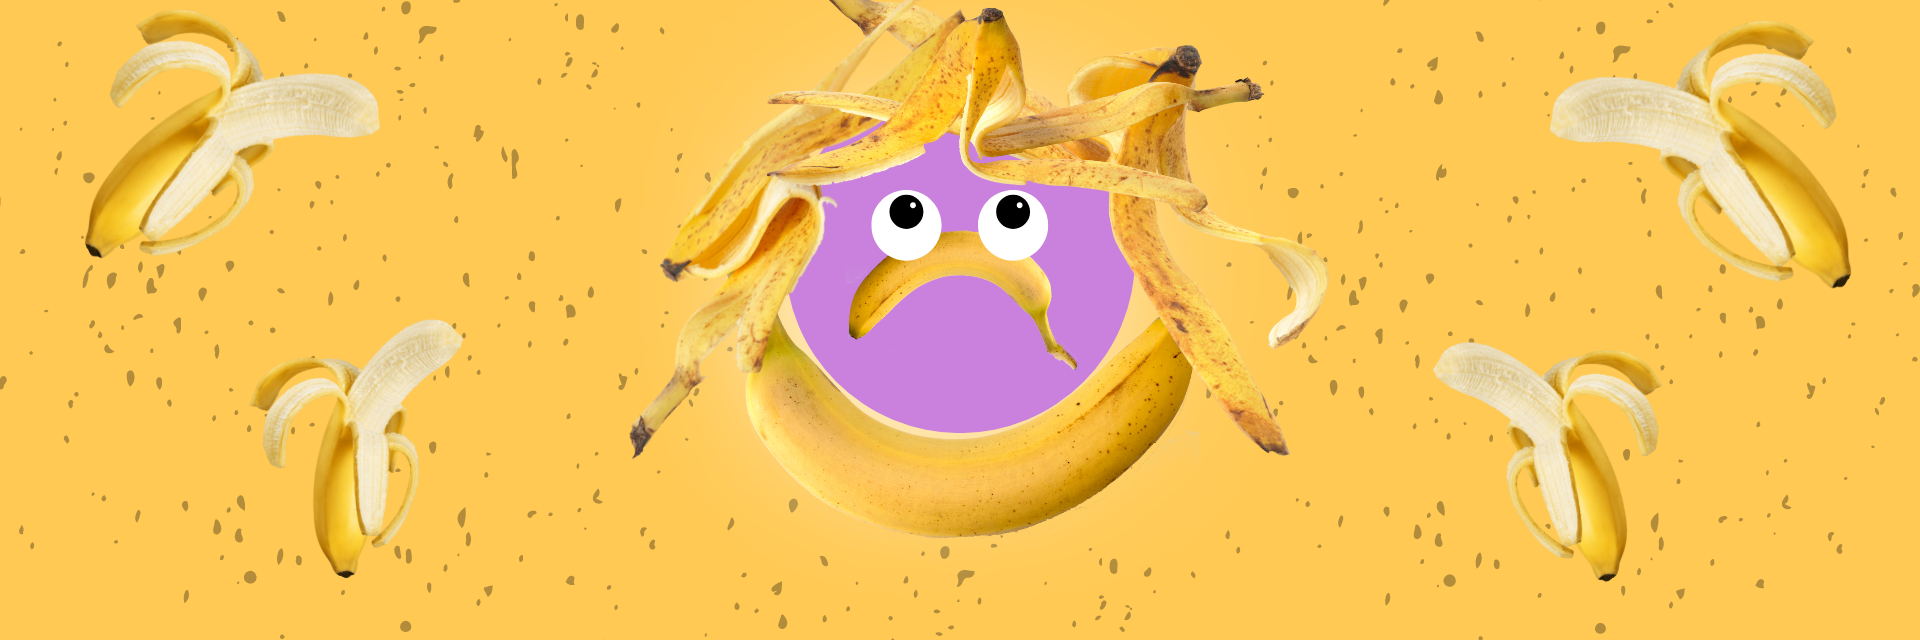 Lähetä palautetta S-ryhmälle Reilujen banaanien palauttamiseksi valikoimiin